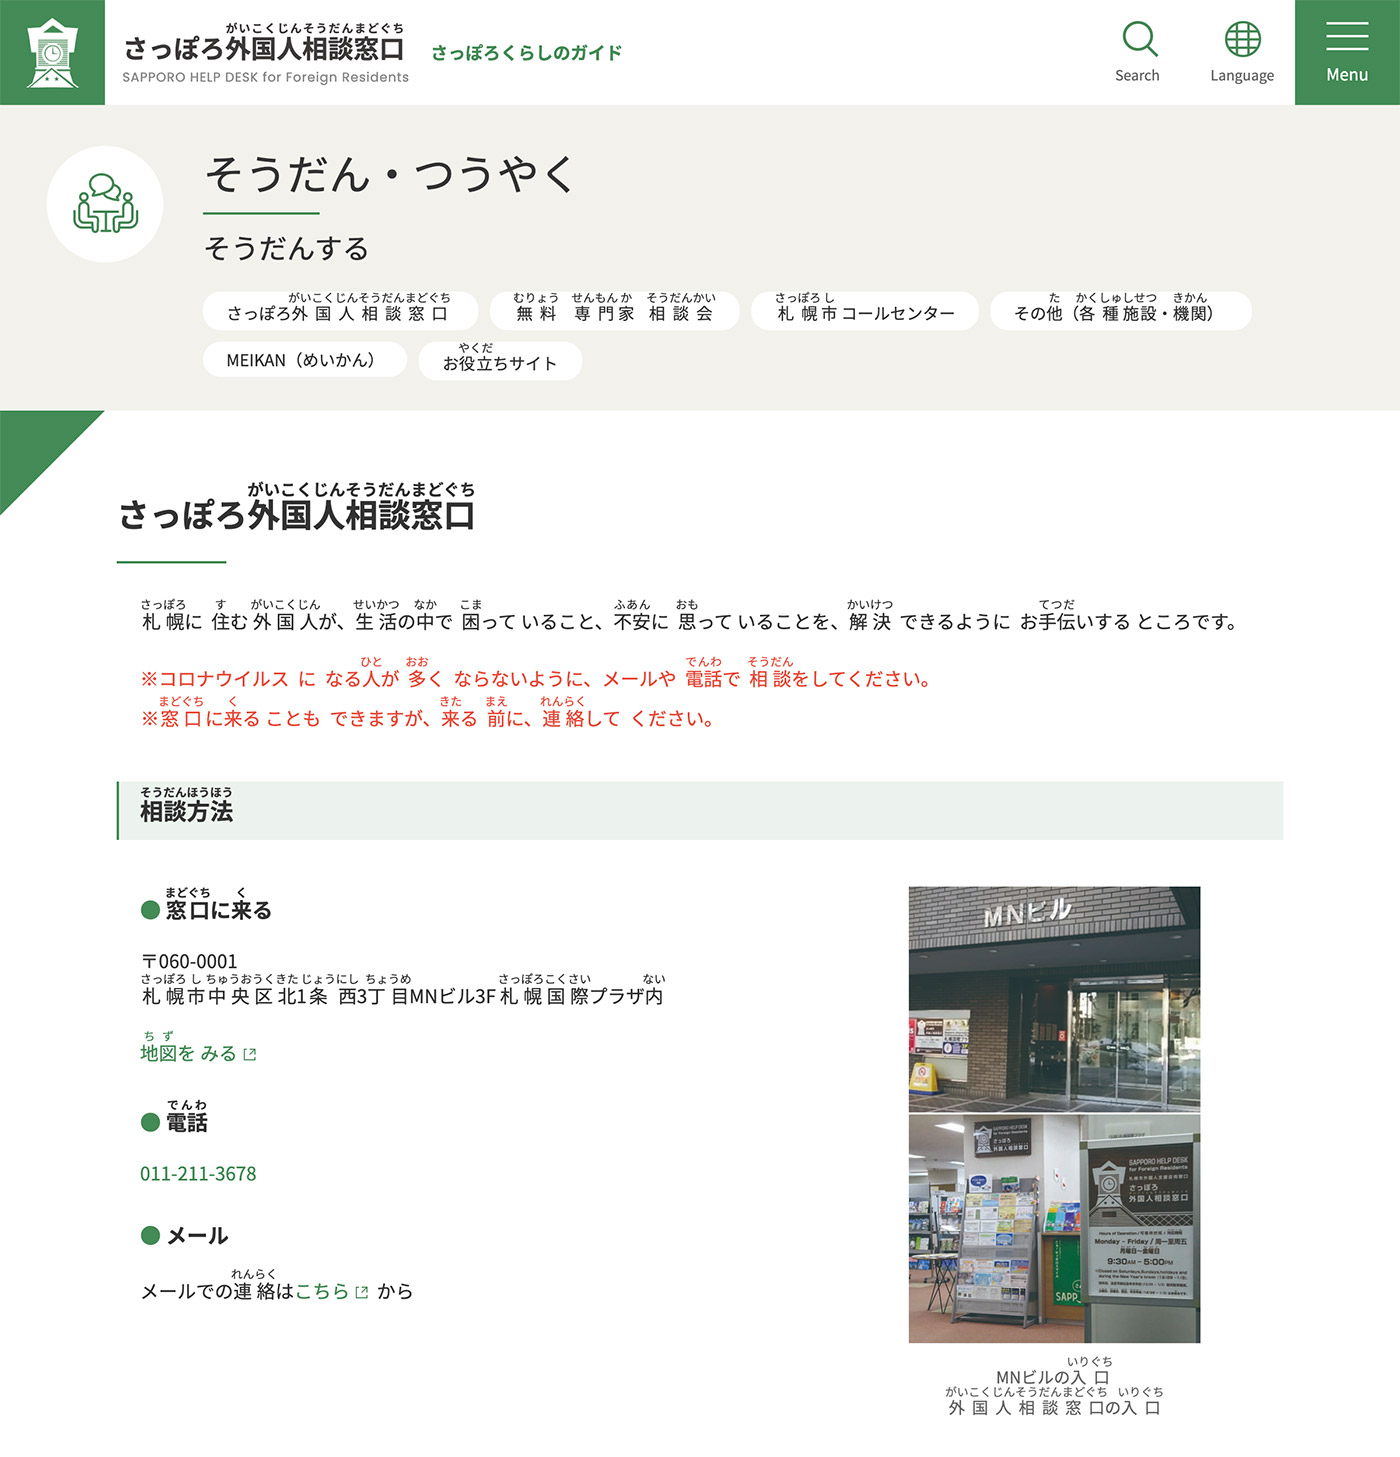 「さっぽろ外国人相談窓口」やさしい日本語のページ